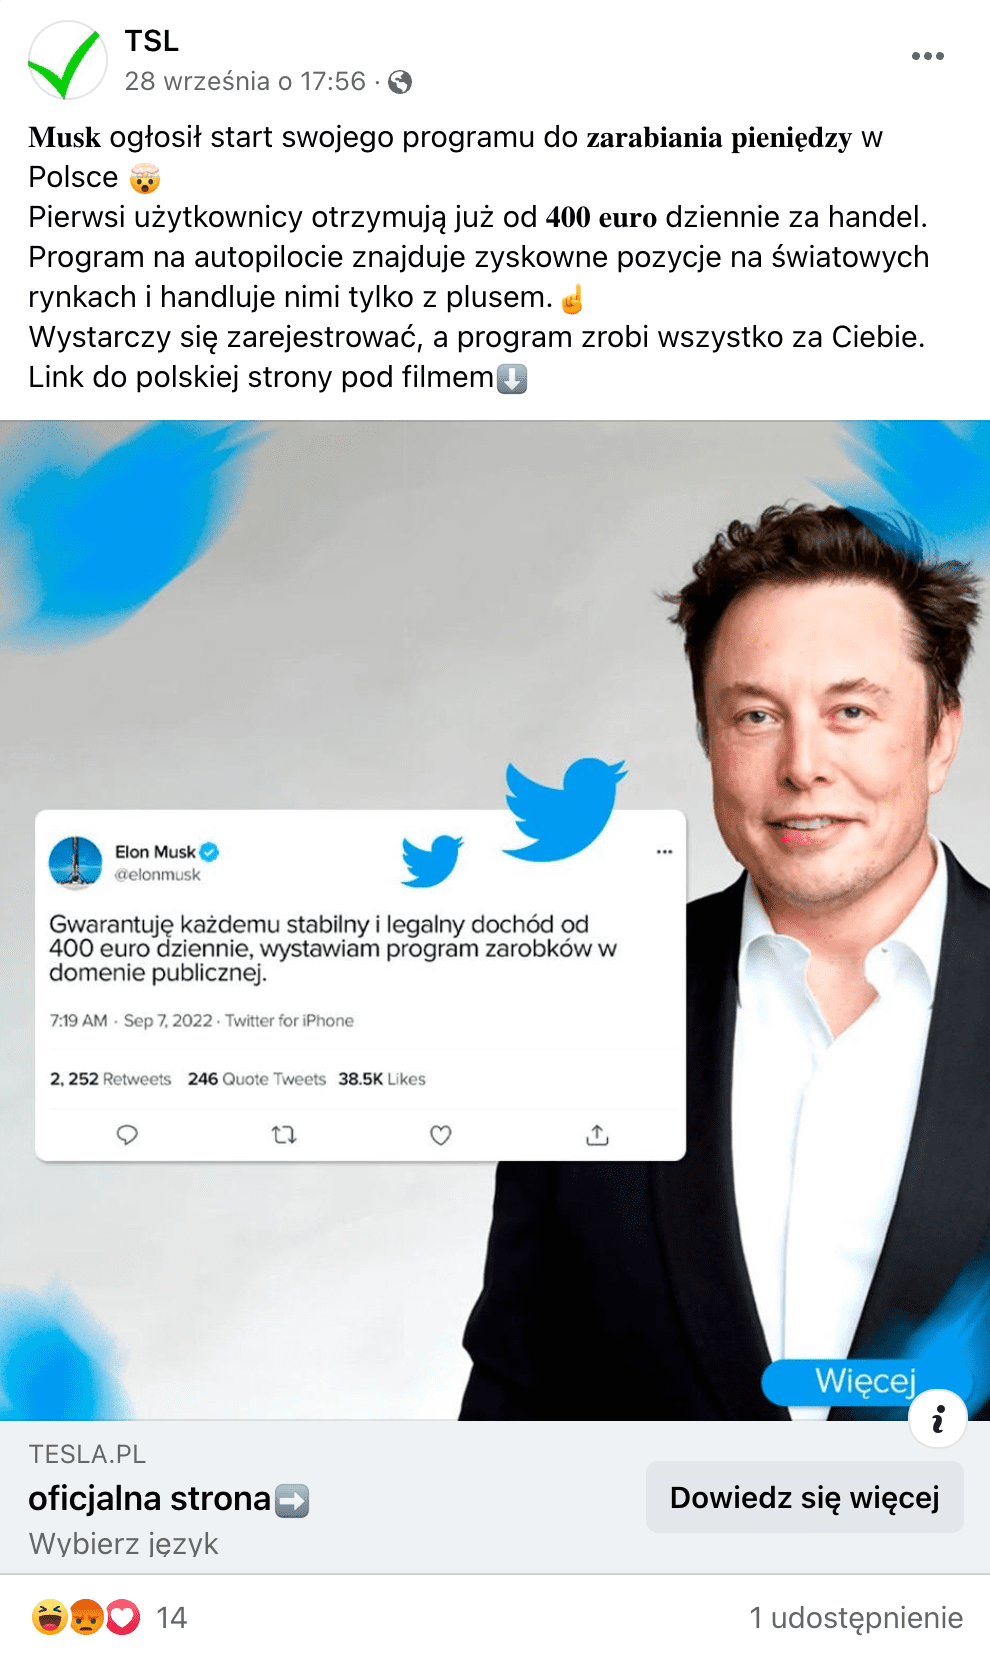 Zrzut ekranu z posta na Facebooku dotyczącego programu do zarabiania. Widoczne jest zdjęcie Elona Muska w białej koszuli i czarnej marynarce oraz wpis, który rzekomo biznesmen zamieścił na Twitterze.